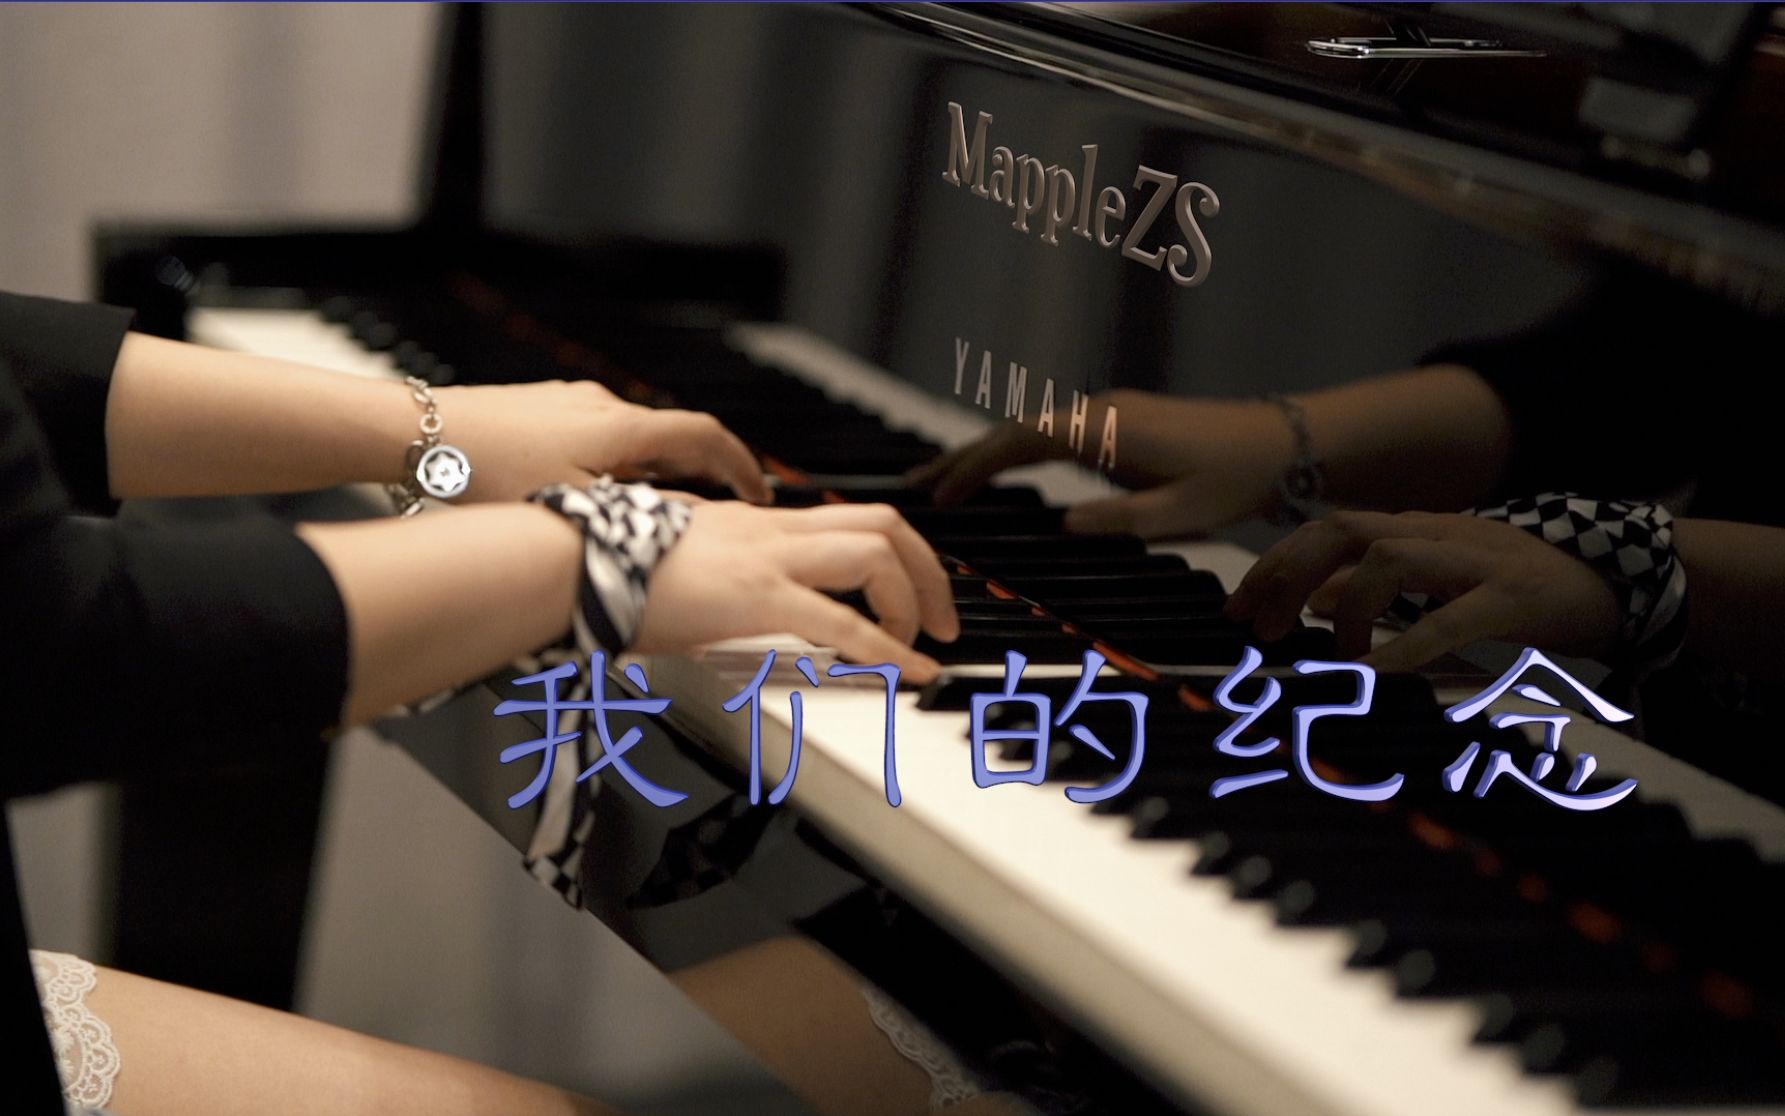 [图]放羊的星星「我们的纪念」-MappleZS钢琴演奏